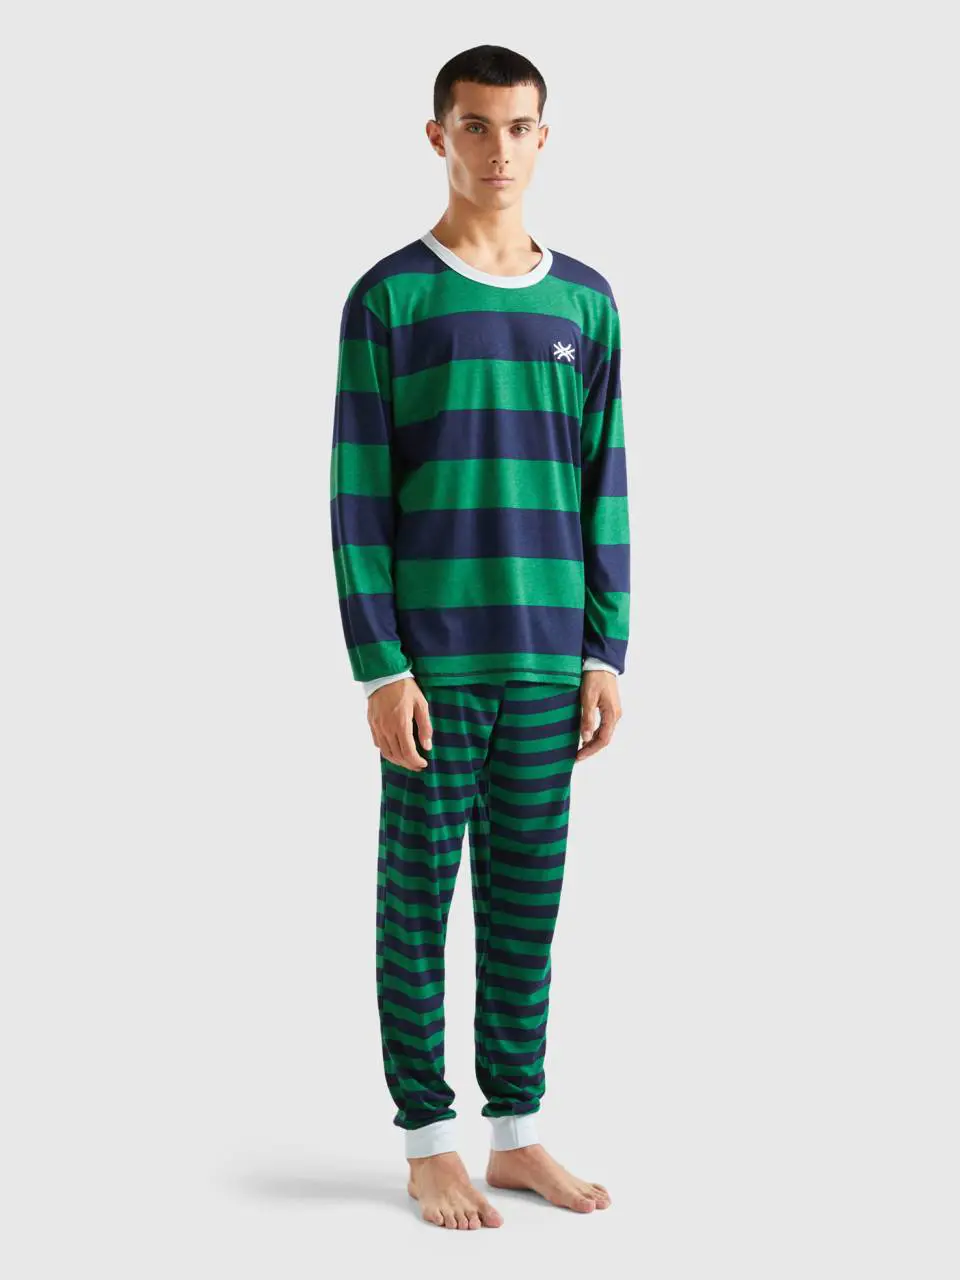 Benetton long striped pyjamas. 1